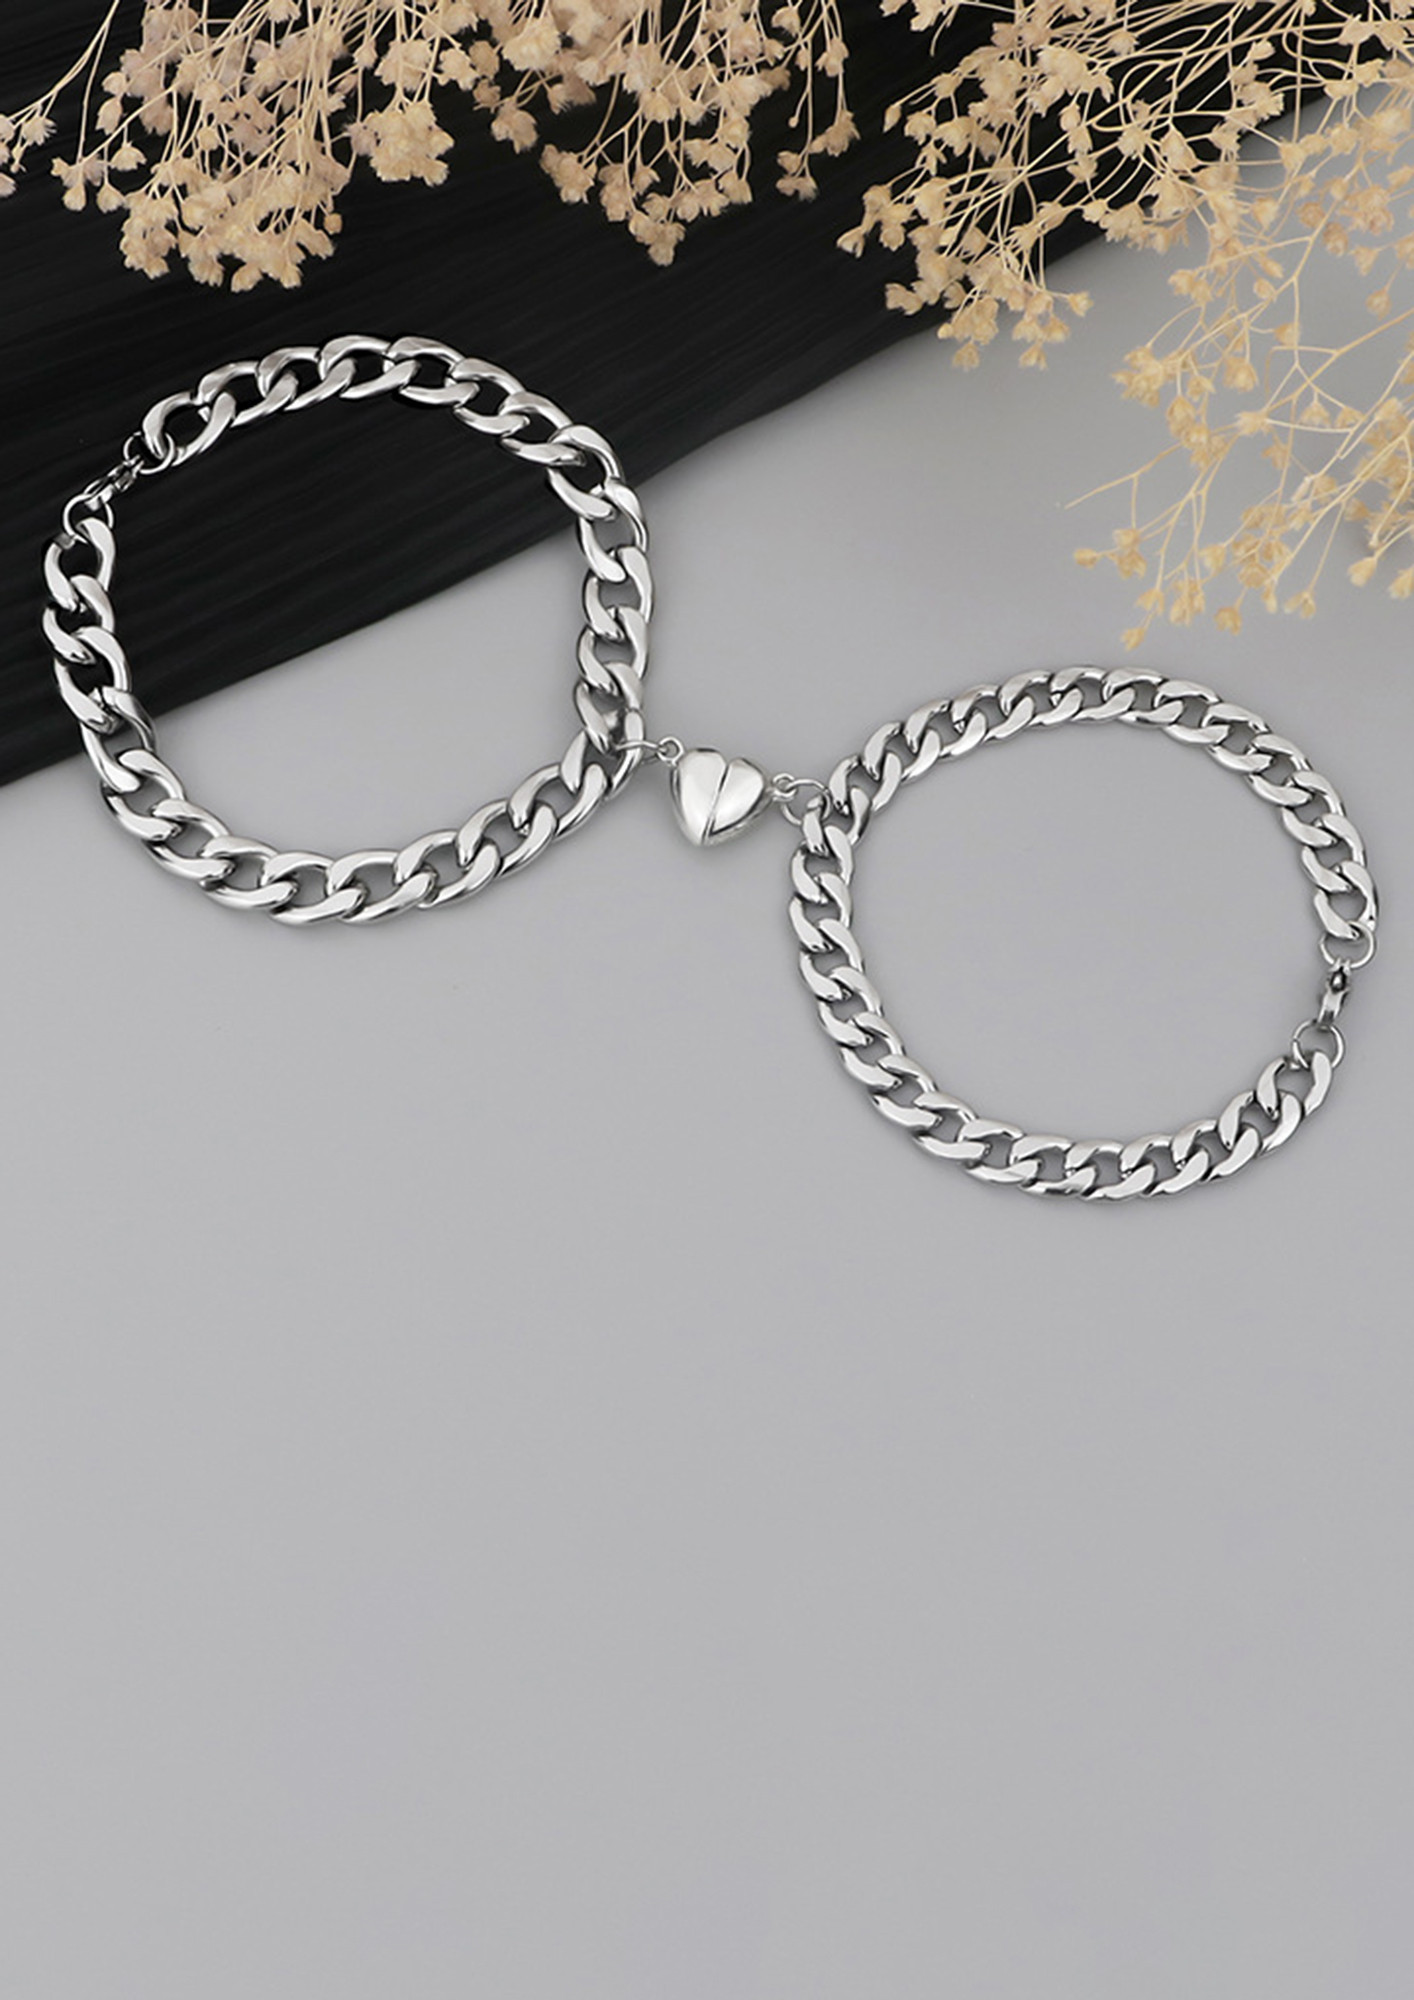 Elegant Heart Shaped Magnet Bracelet For Couples Stainless Steel Magne